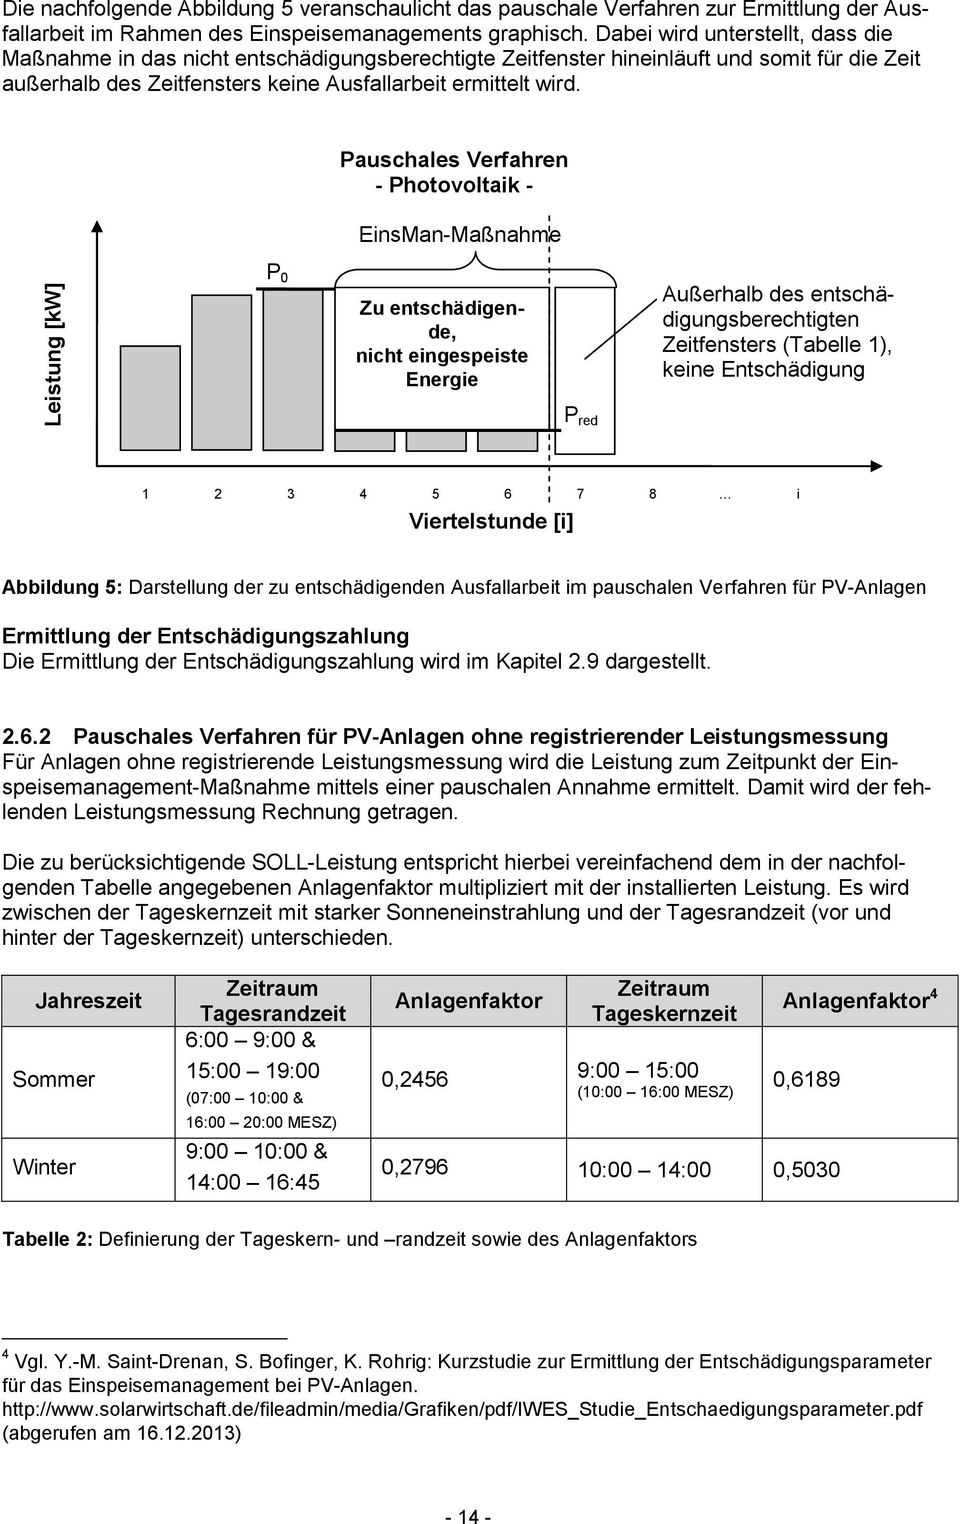 Pauschales Verfahren - Photovoltaik - EinsMan-Maßnahme P 0 Zu entschädigende, nicht eingespeiste Energie Außerhalb des entschädigungsberechtigten Zeitfensters (Tabelle 1), keine Entschädigung P red 1